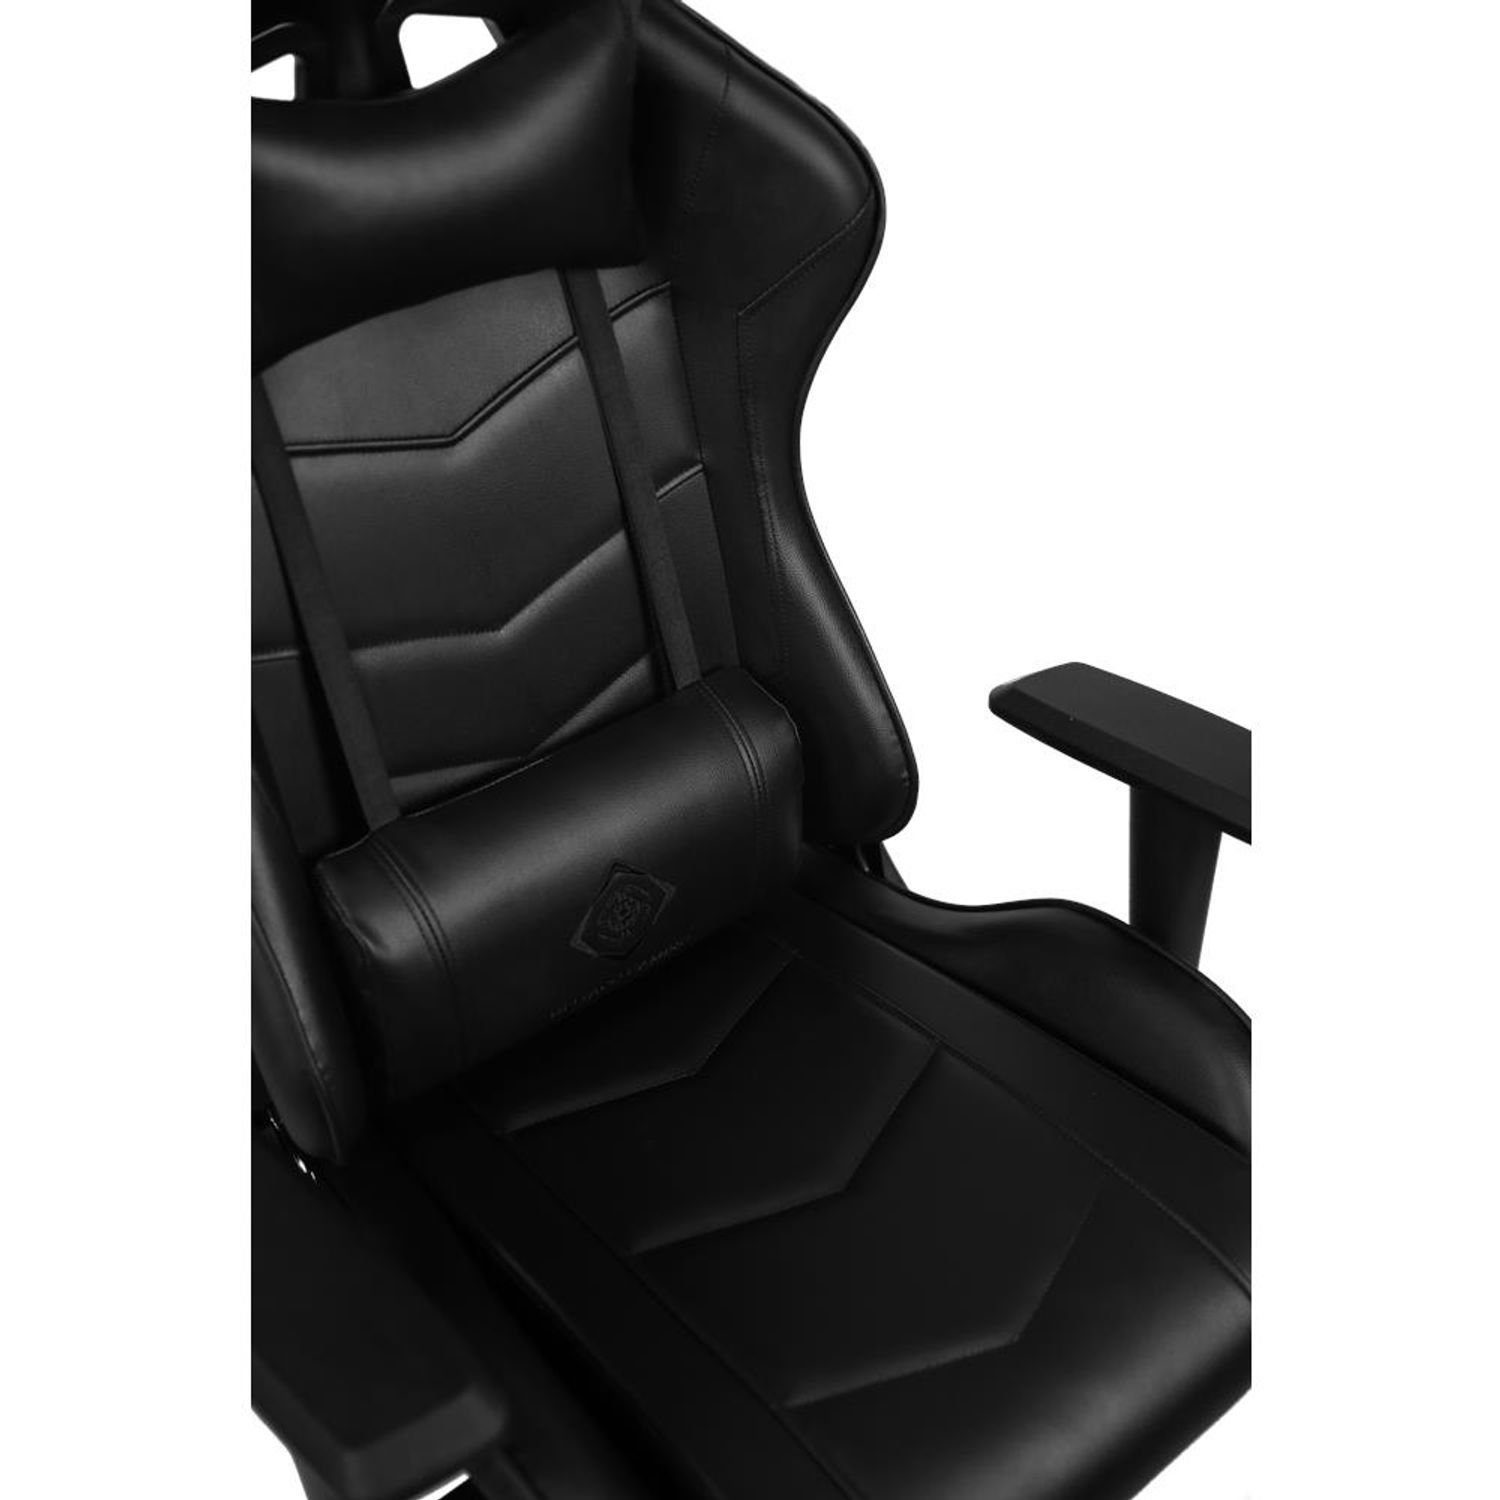 Herstellergarantie (kein Gamer inkl. schw., Rückenlehne, hohe Kissen Stuhl Stuhl Jahre groß, Gaming-Stuhl Gaming DELTACO schwarz 110kg 5 Set), extra Jumbo